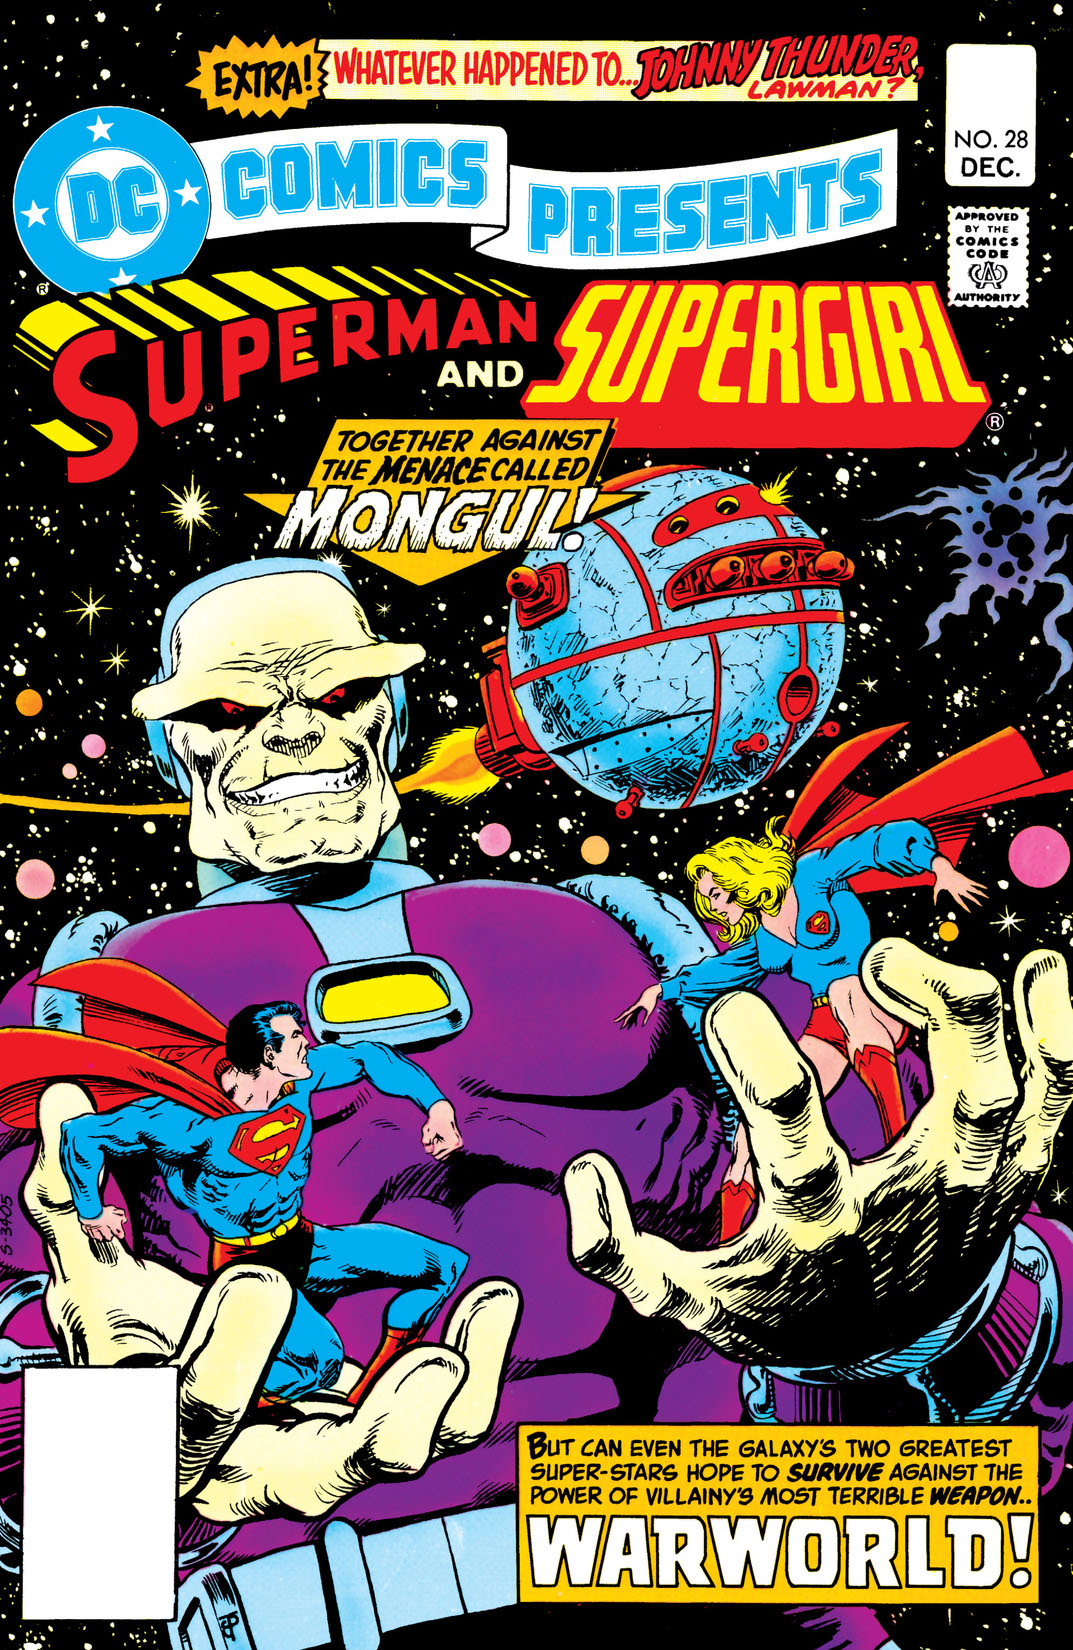 DC Comics Presents (1978-1986) #28 preview images